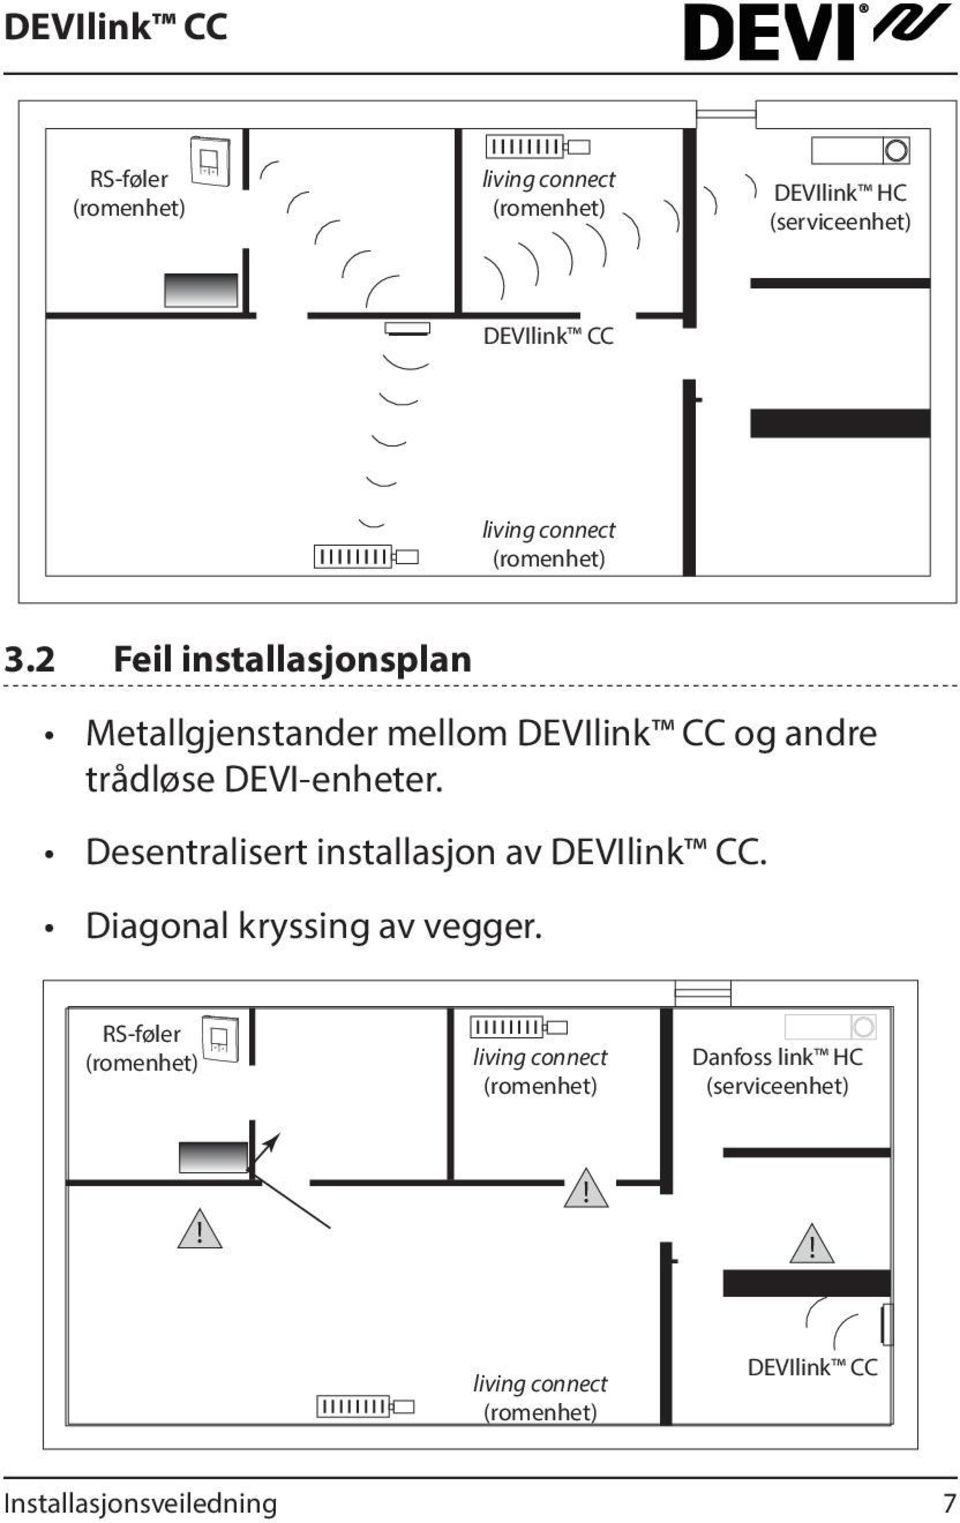 2 Feil installasjonsplan Metallgjenstander mellom DEVIlink CC og andre trådløse DEVI-enheter.